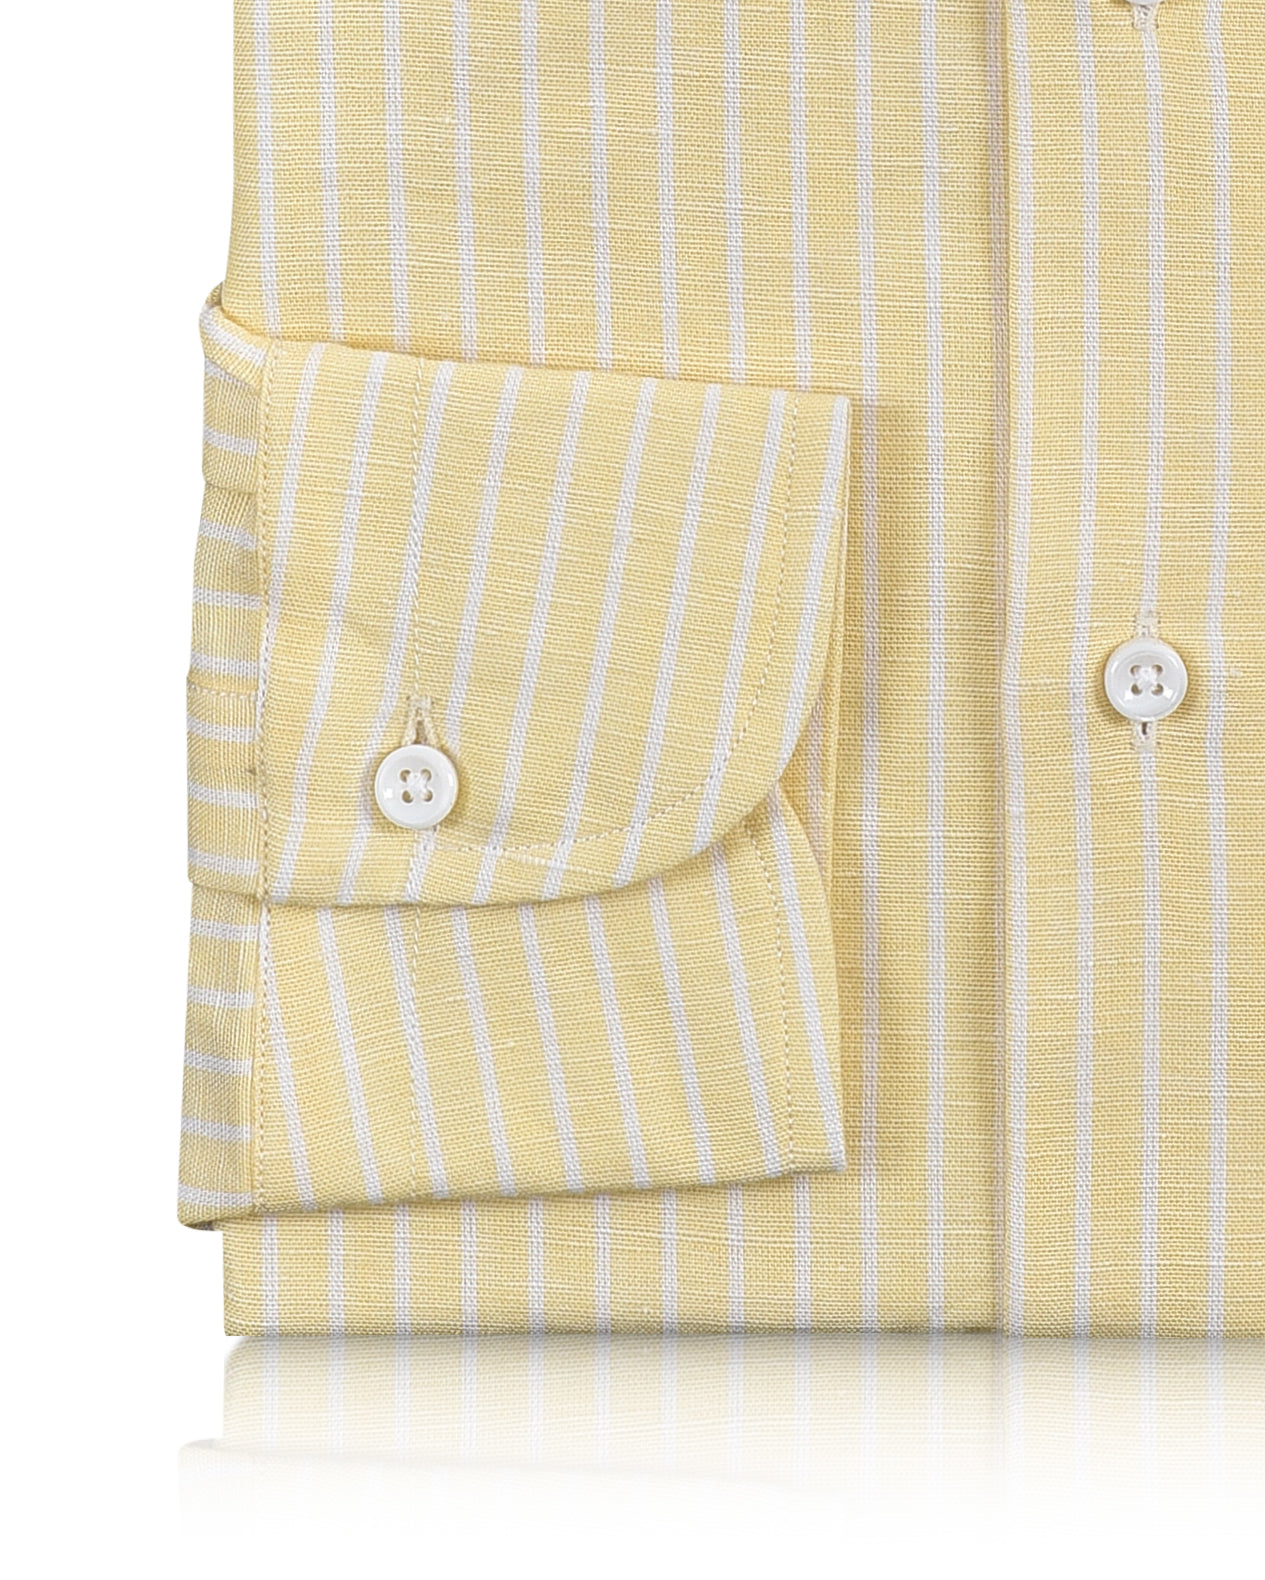 Cotton Linen: White Pencil Stripes On Pastel Yellow